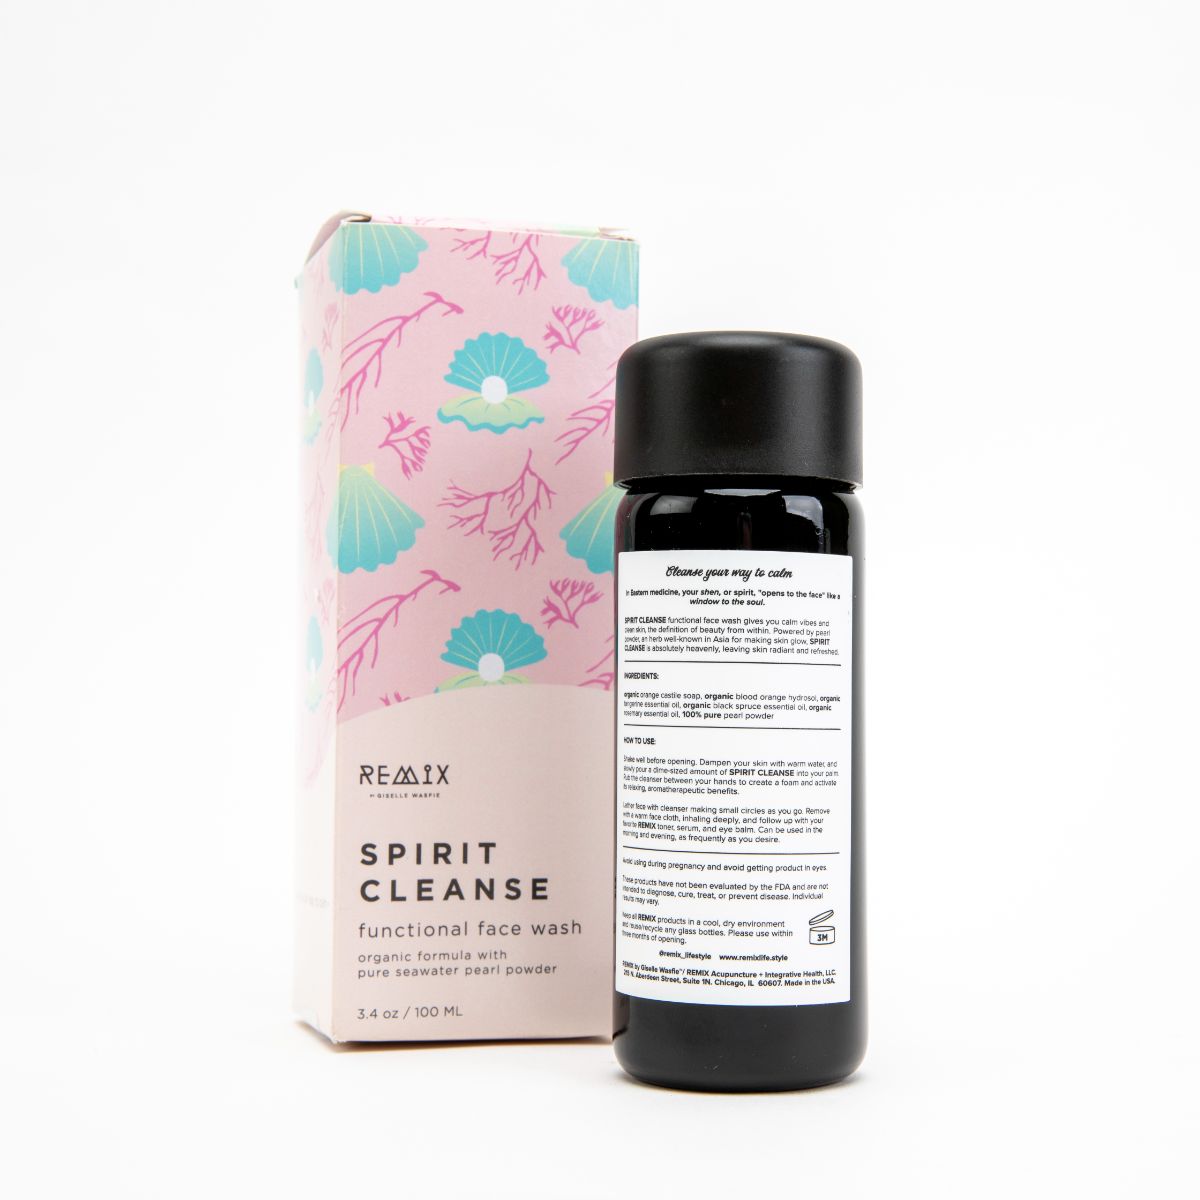 REMIX Pearl Powder Face Wash - Castile Soap Face Wash